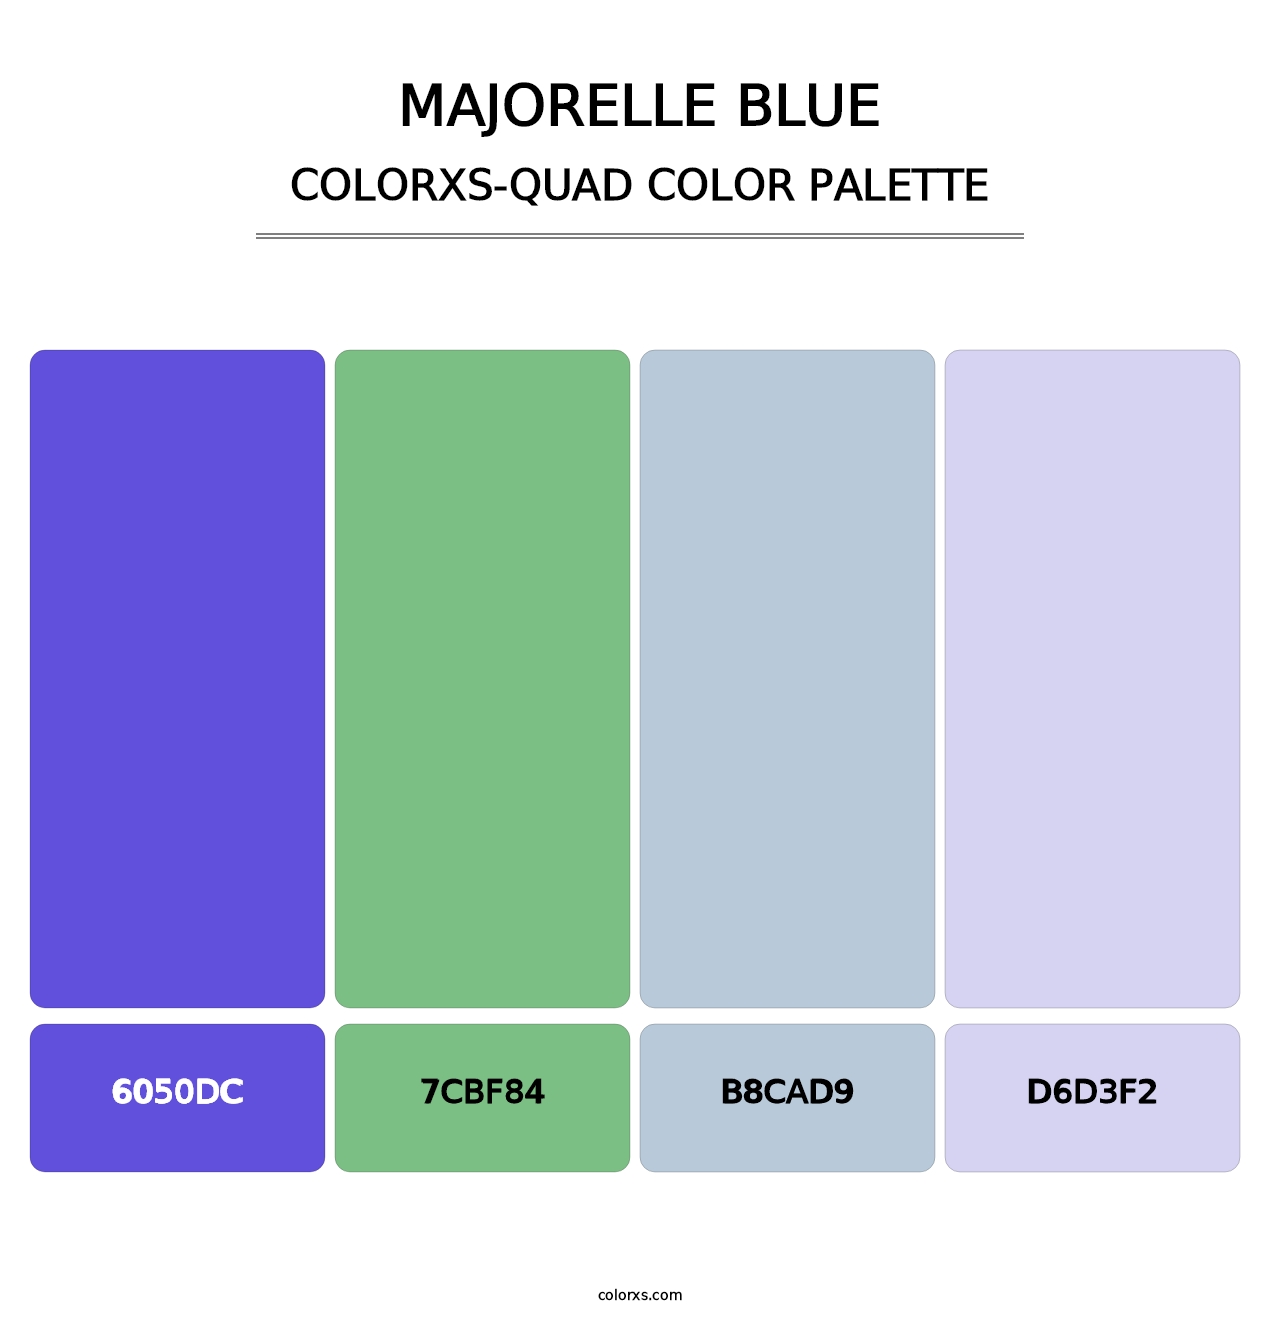 Majorelle Blue - Colorxs Quad Palette